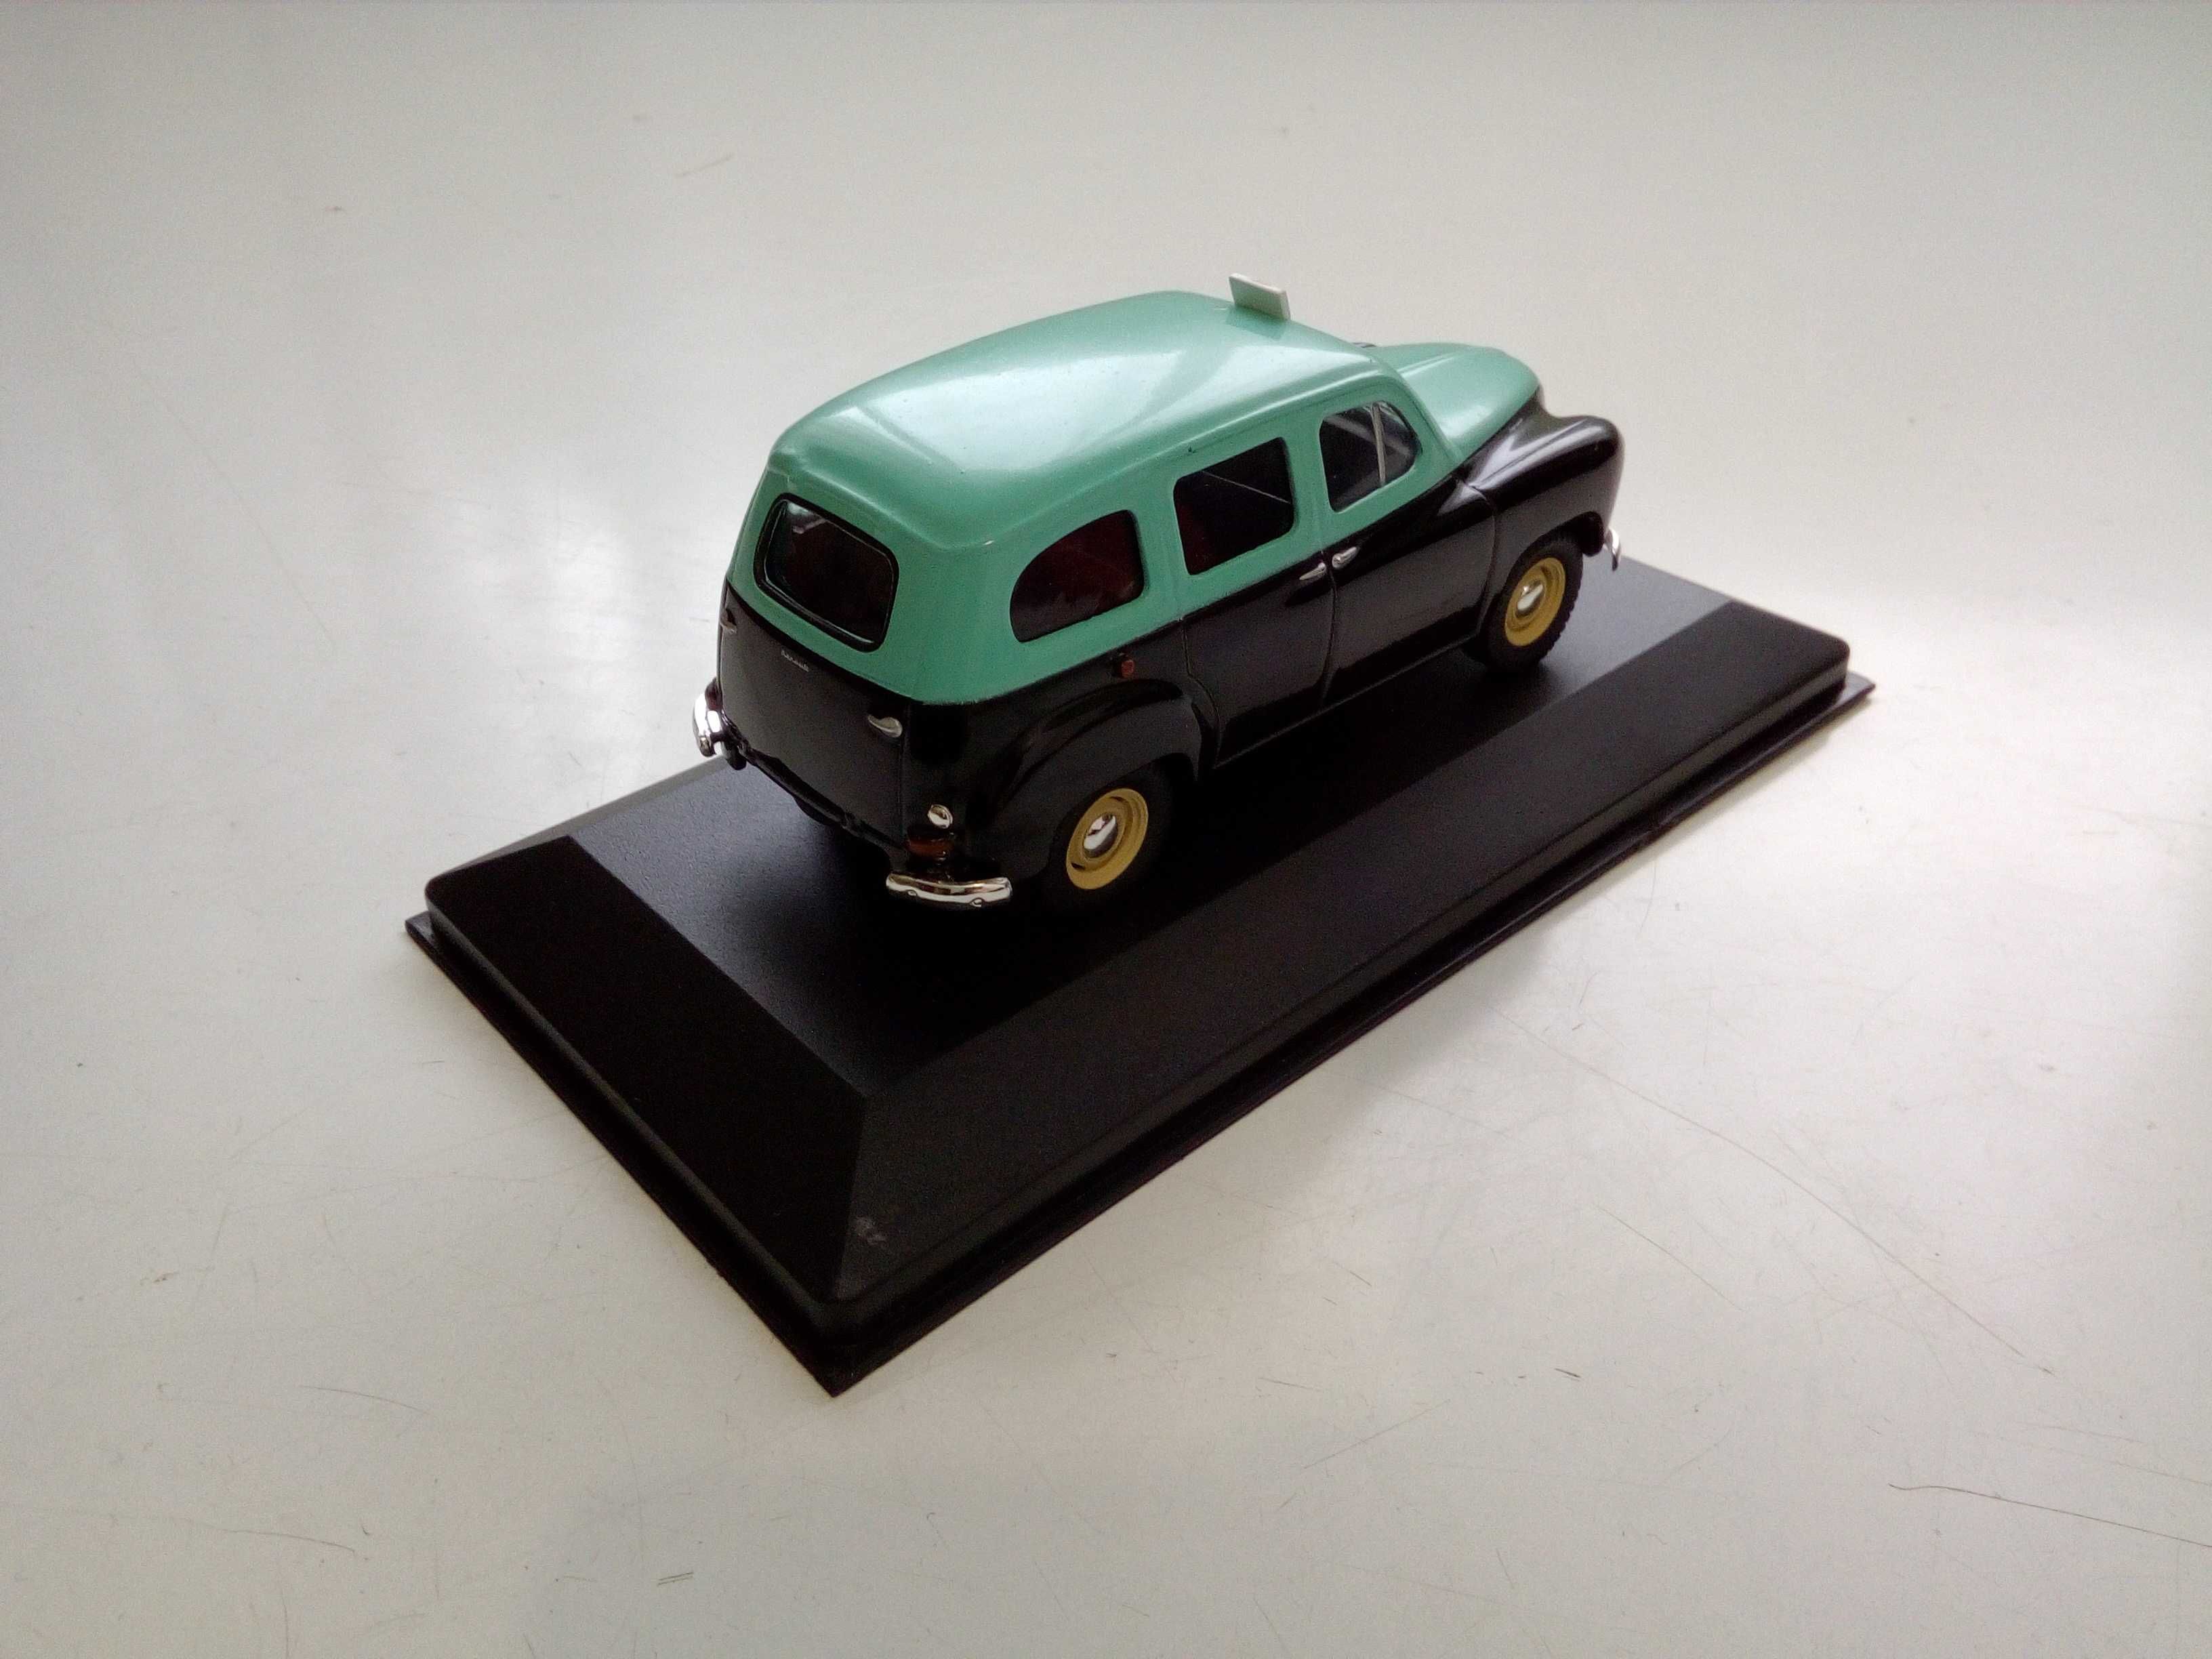 4 Miniaturas de taxis e miniaturas de carros dos anos 50/60